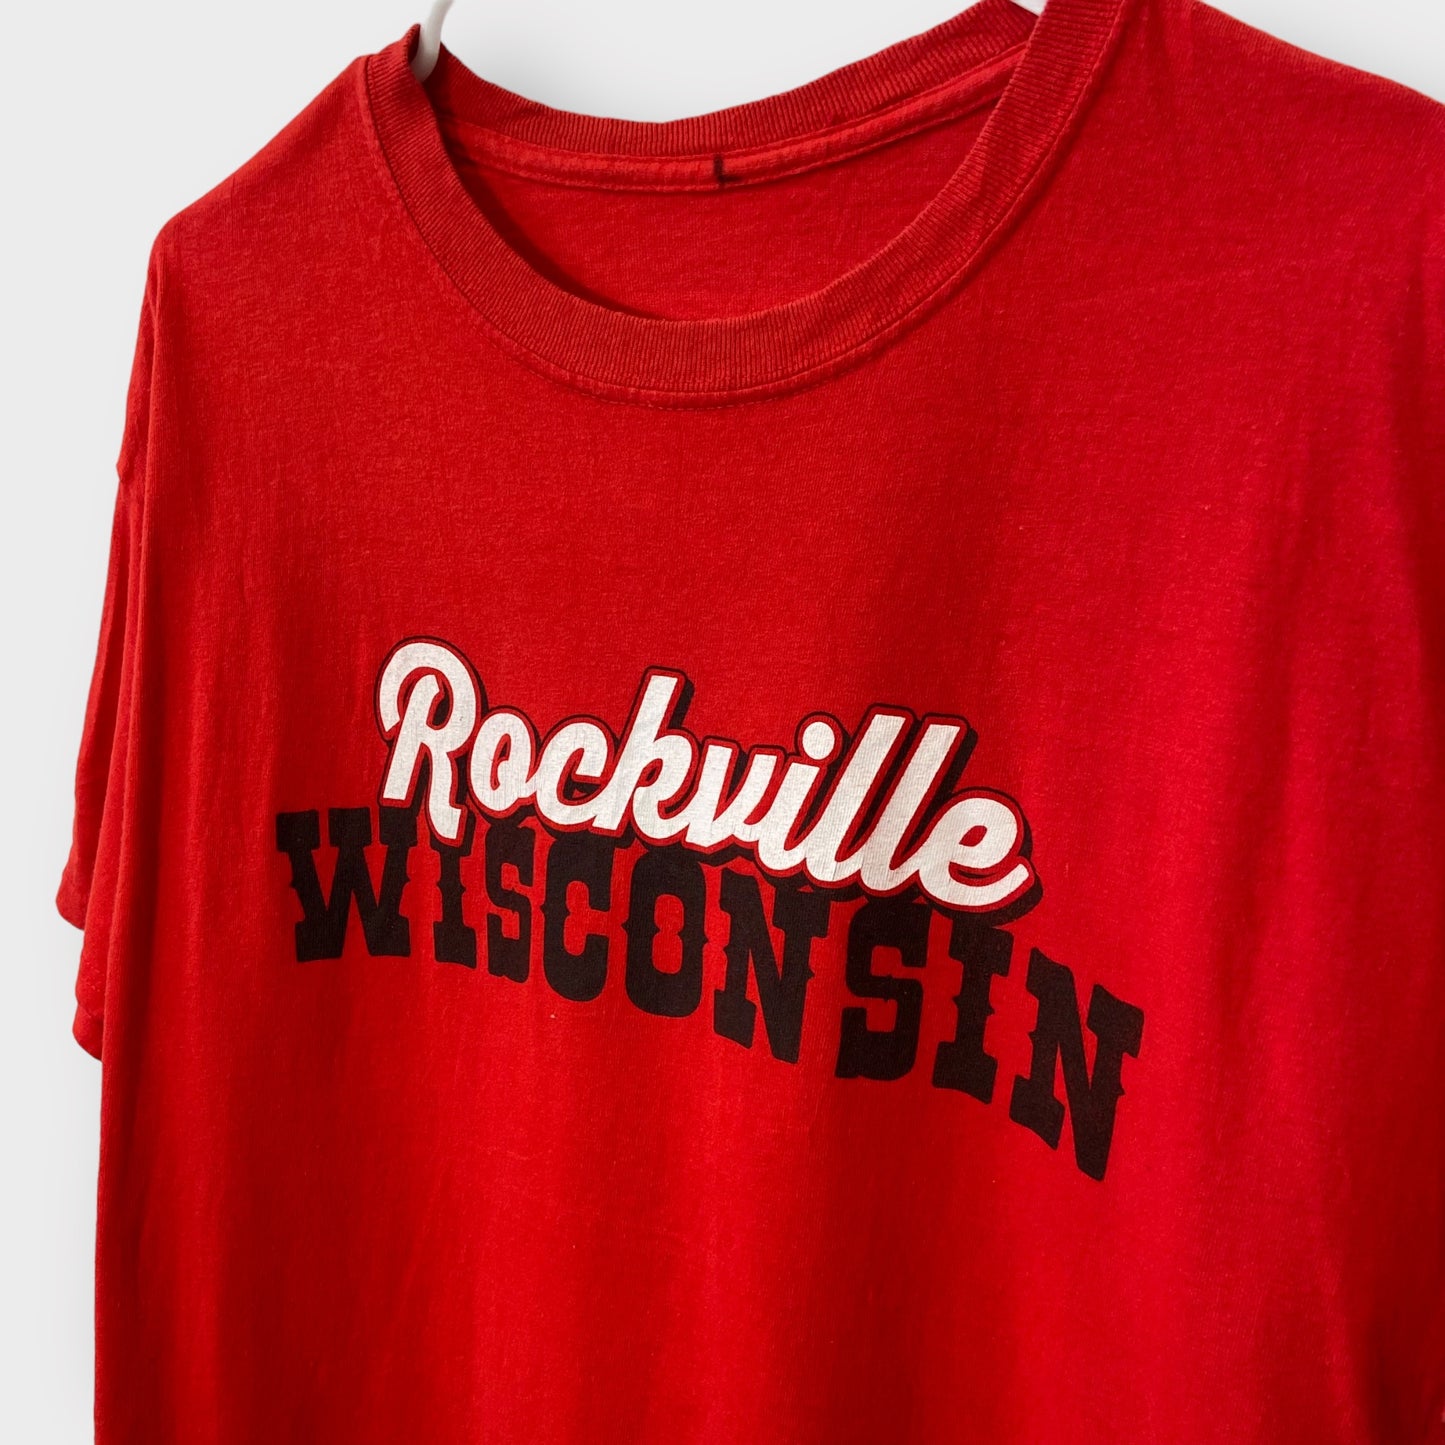 T-shirt Rockville